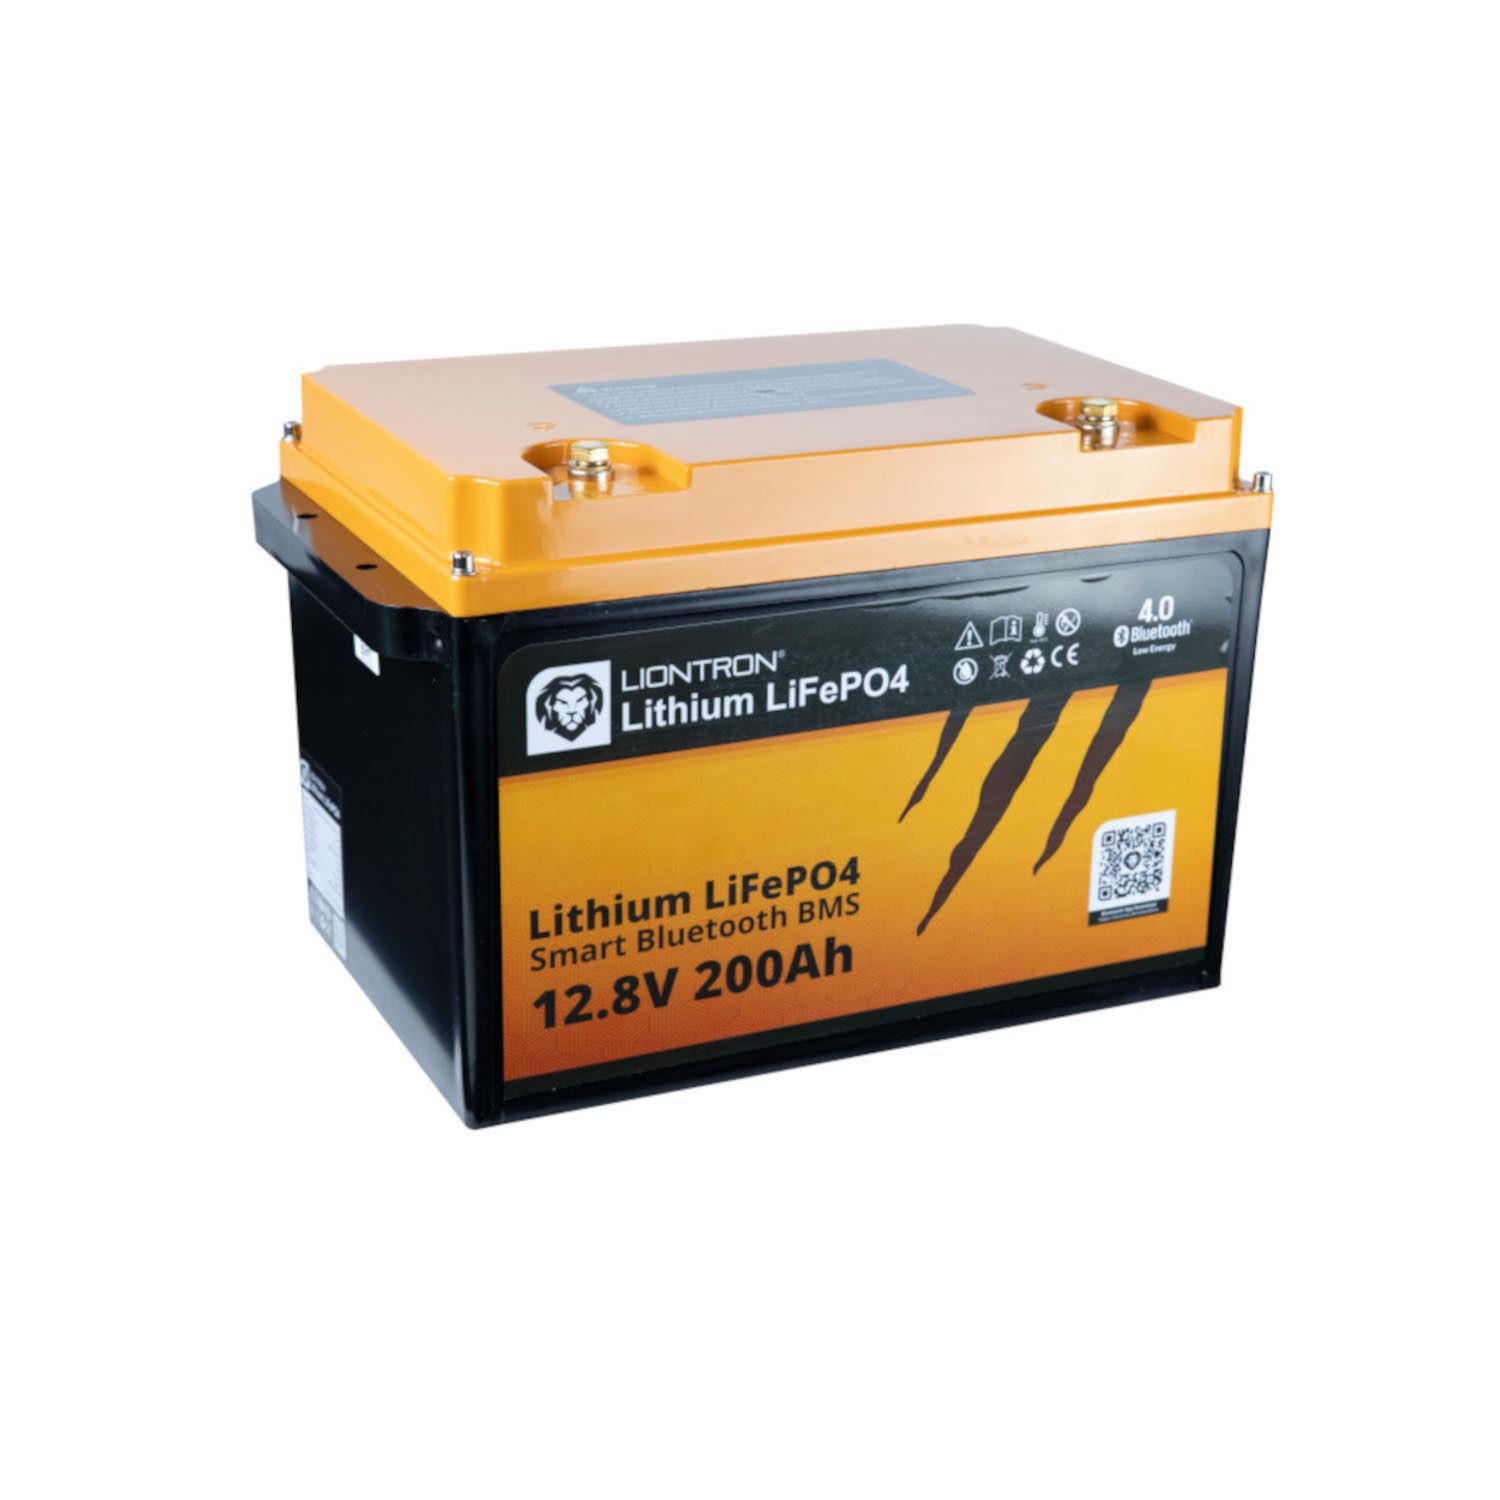 Liontron 200Ah 12V LiFePO4 Lithium Batterie Wohnmobil BMS mit App Arctic und Marine (USt-befreit nach §12 Abs.3 Nr. 1 S.1 UStG)